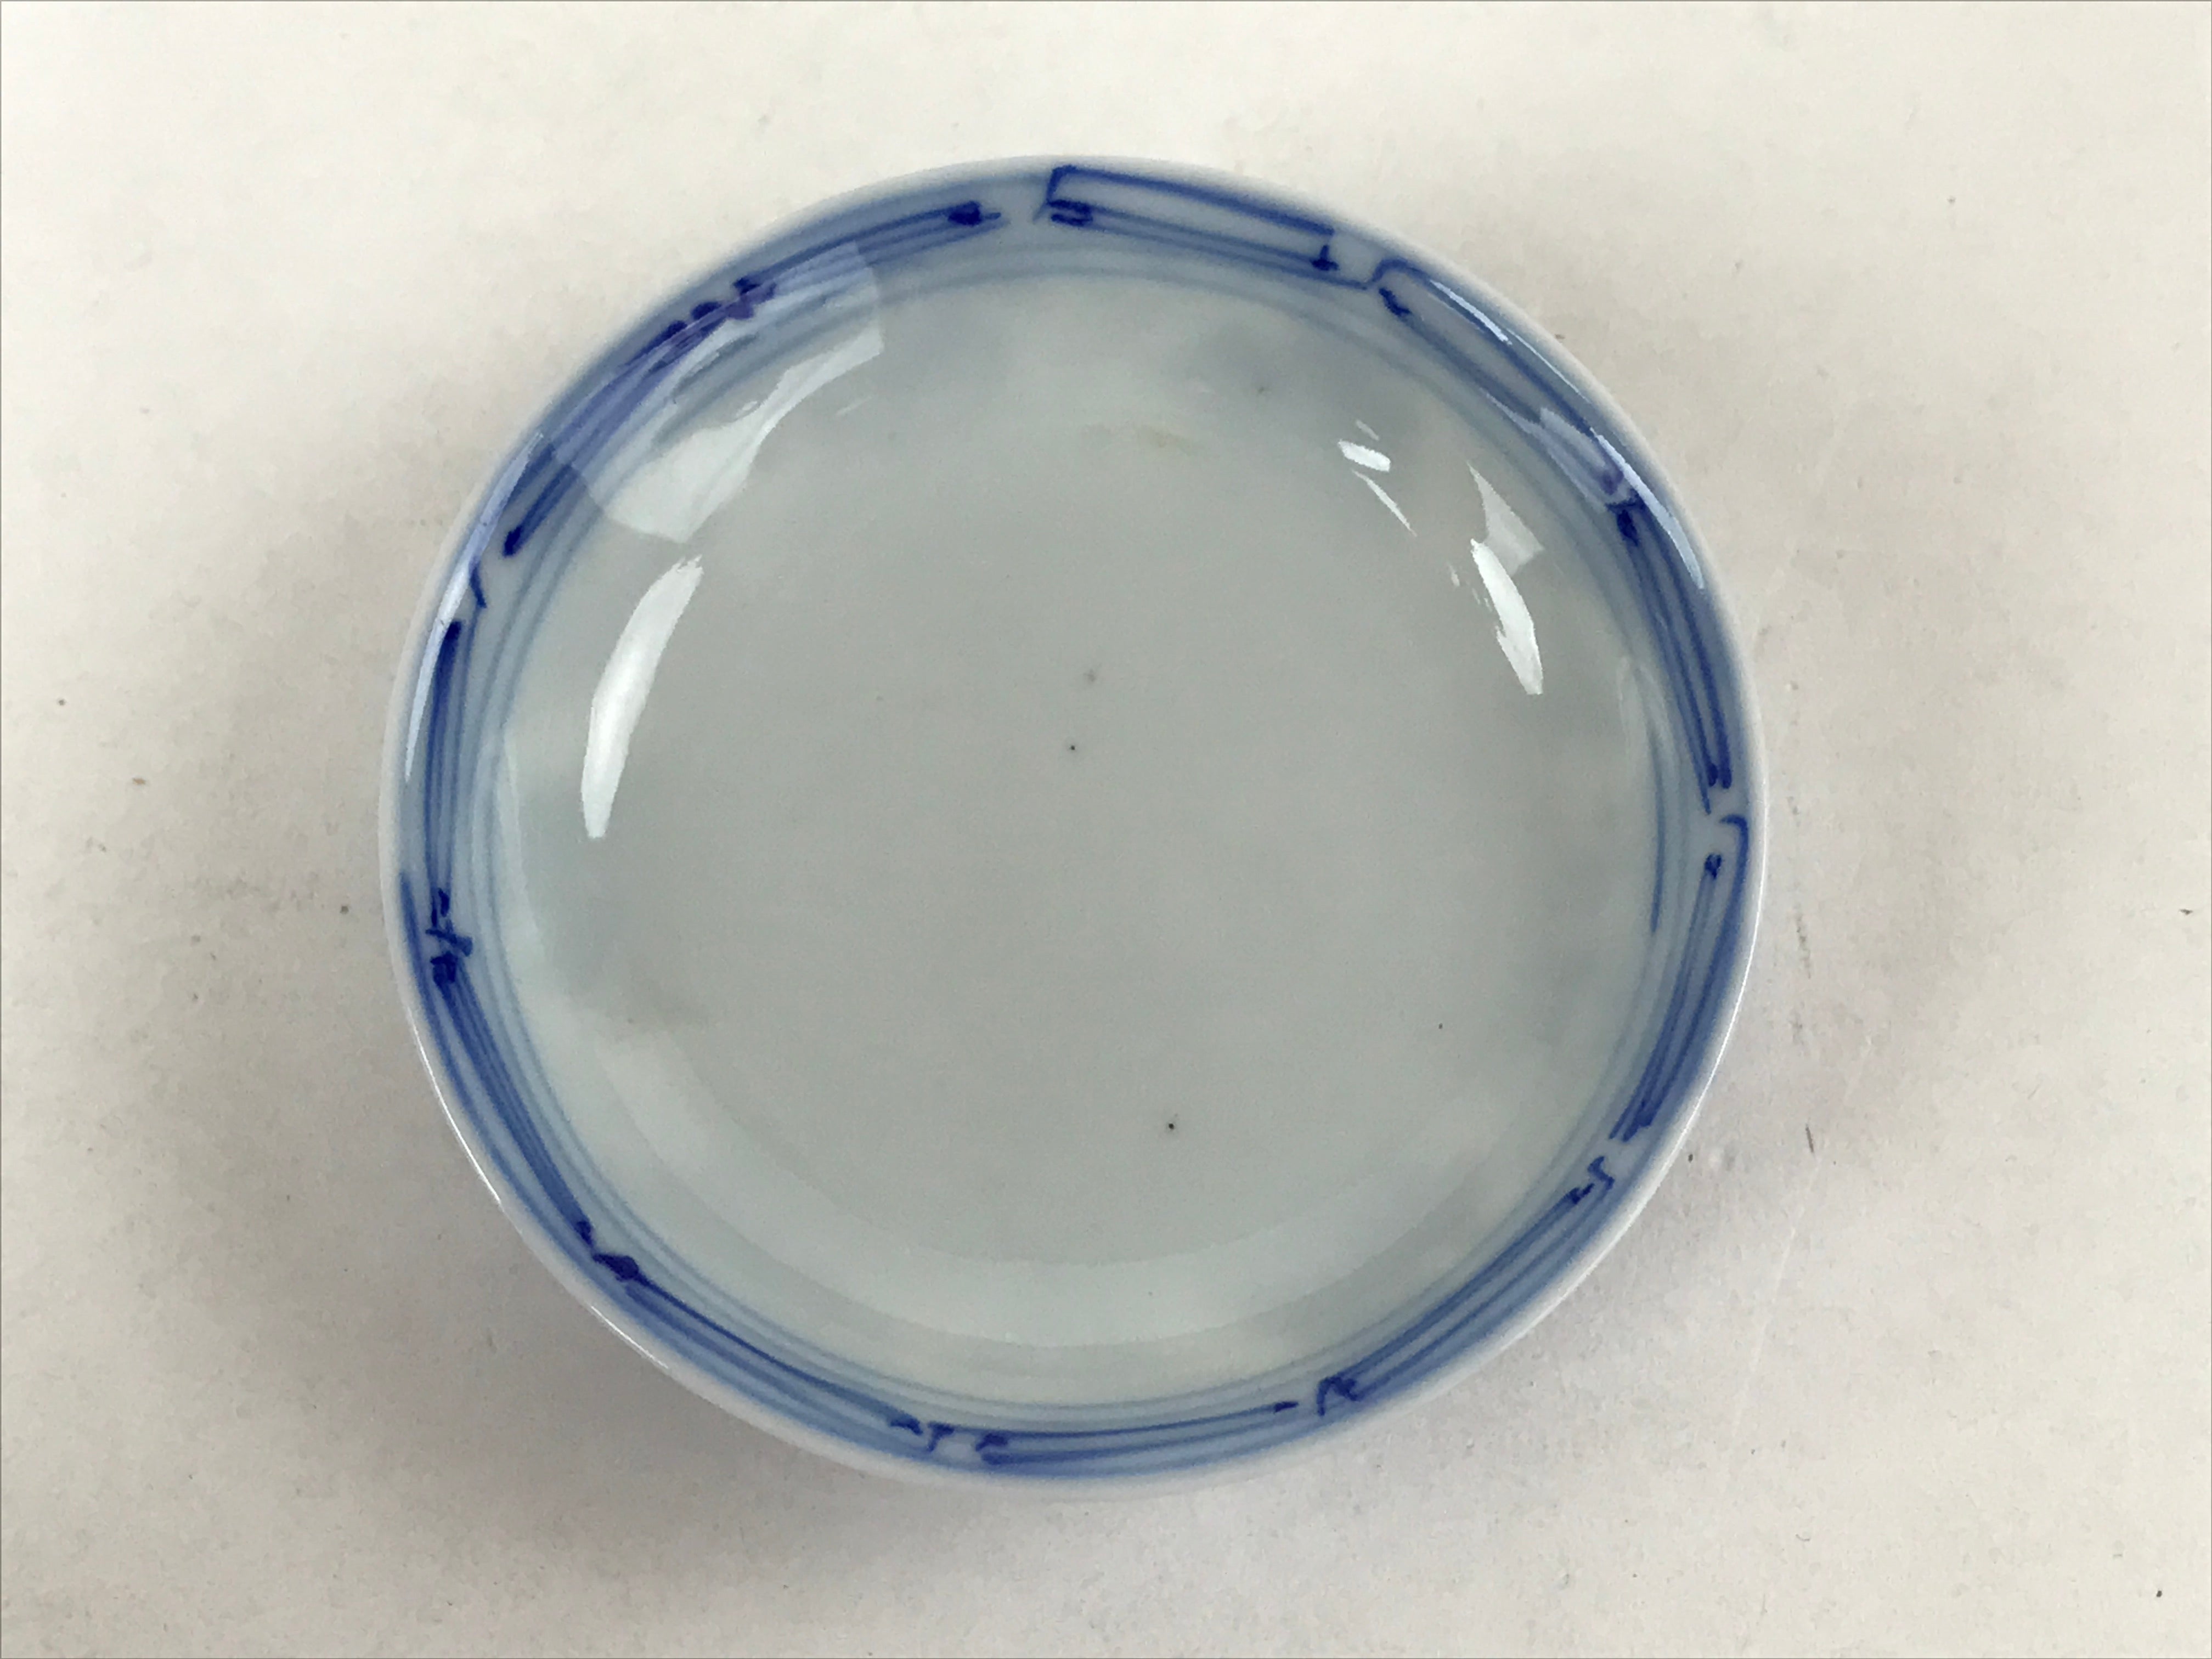 Japanese Ceramic Sometsuke Lidded Bowl Owan Vtg Pottery White Blue Floral PY584